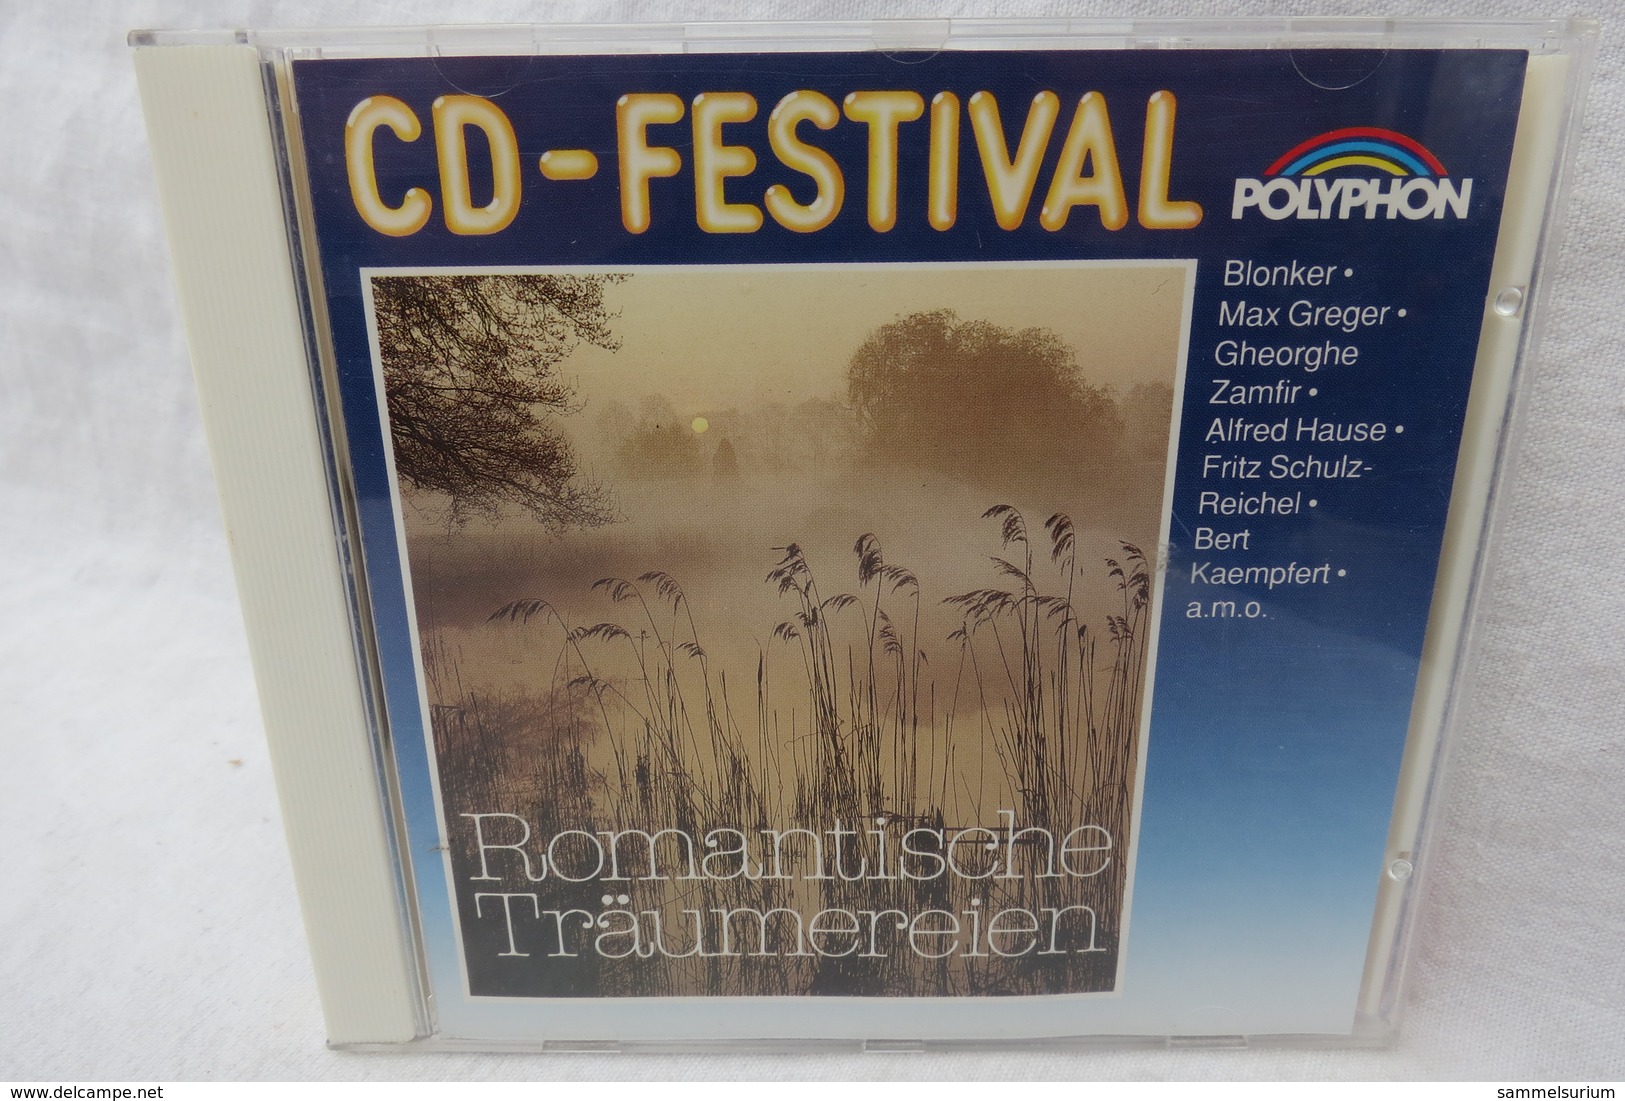 CD "Romantische Träumereien" Div. Interpreten, CD-Festival - Strumentali